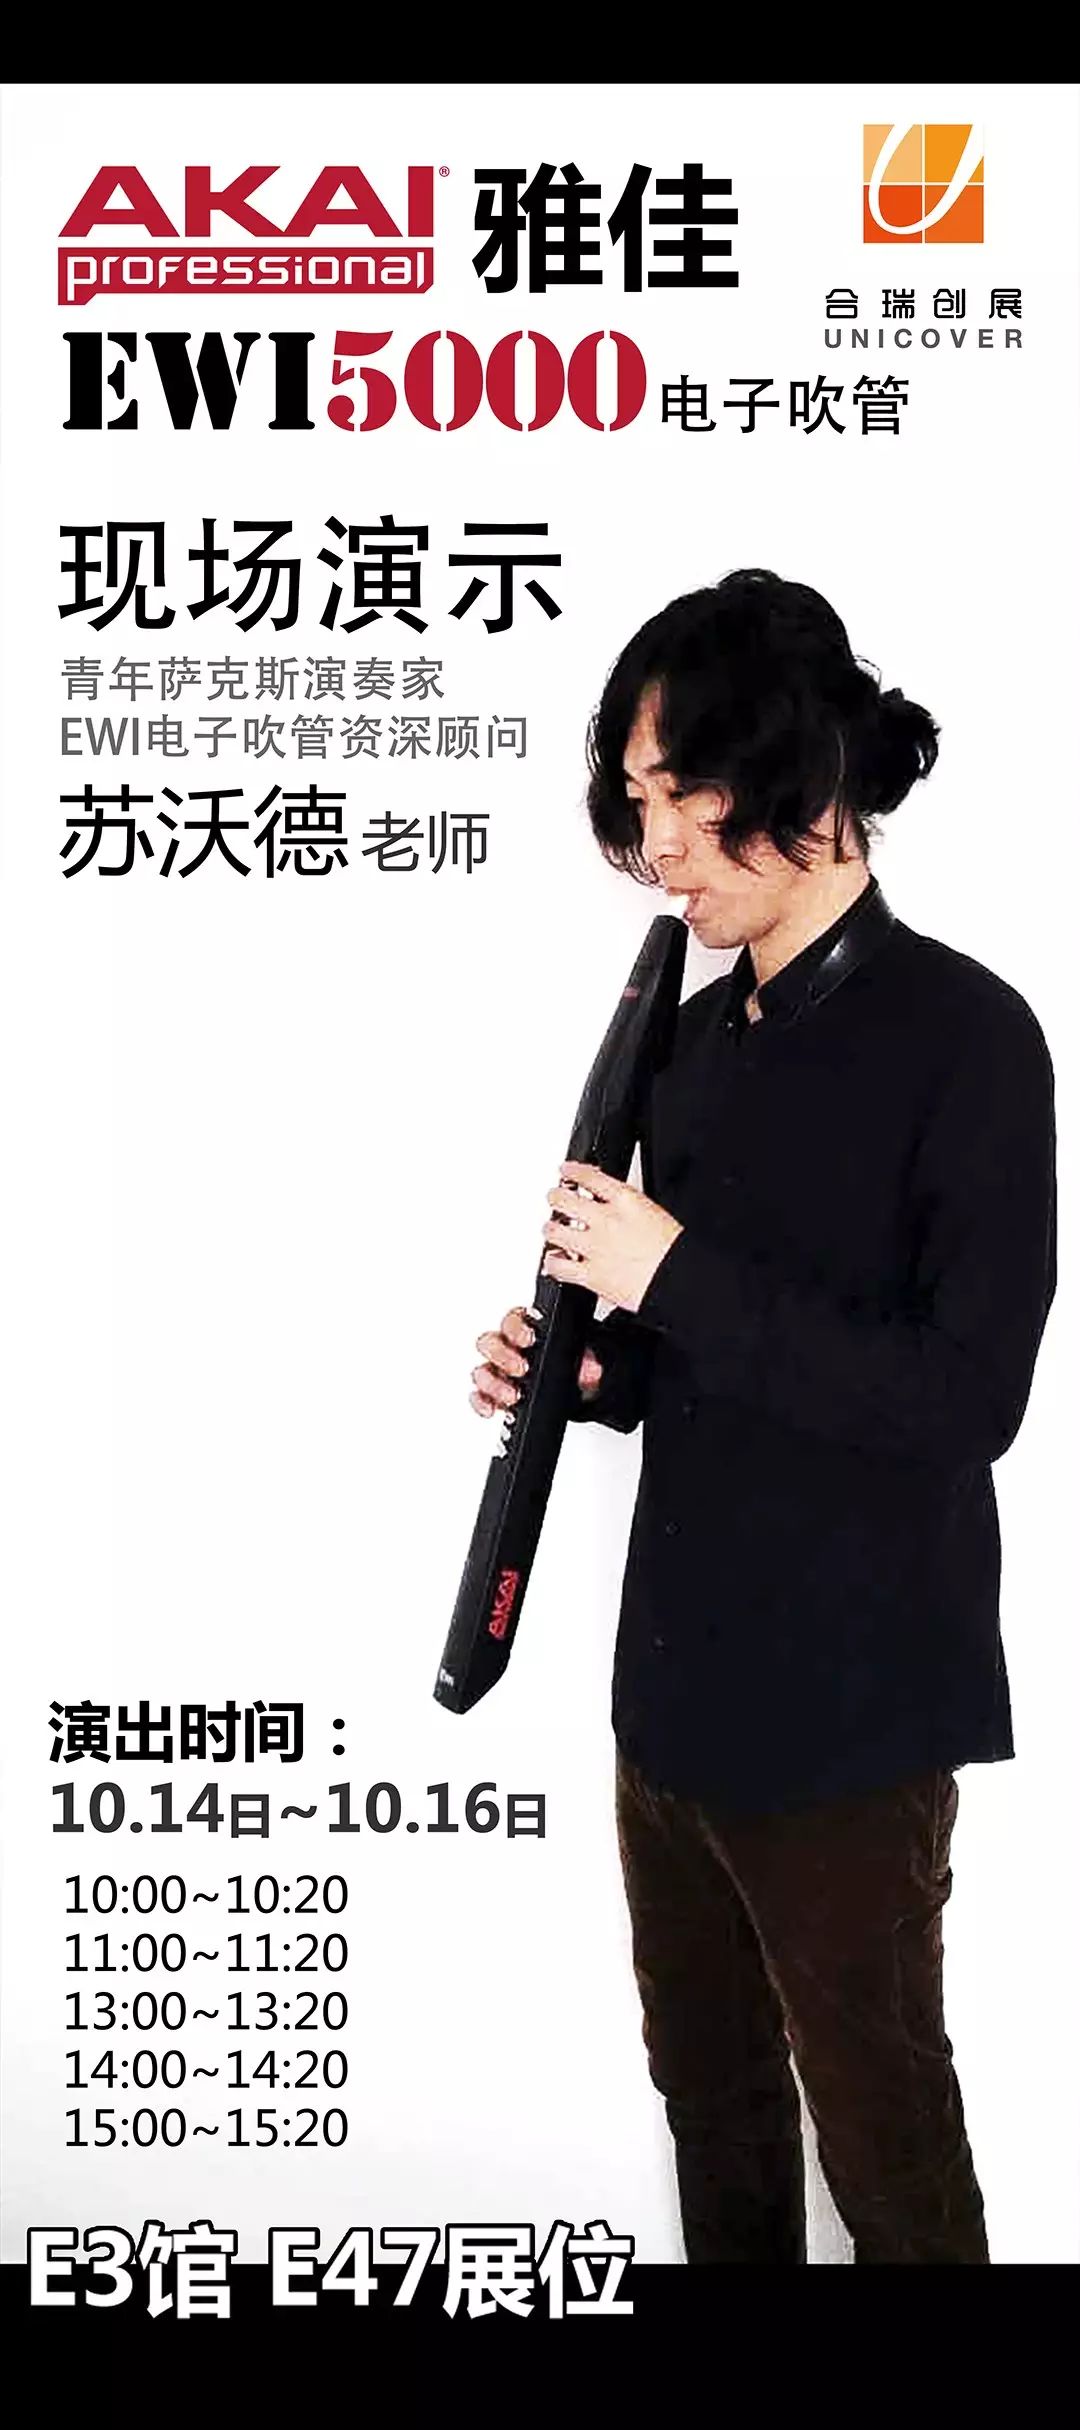 akai ewi5000电吹管震撼登陆2015上海国际乐器展,10月